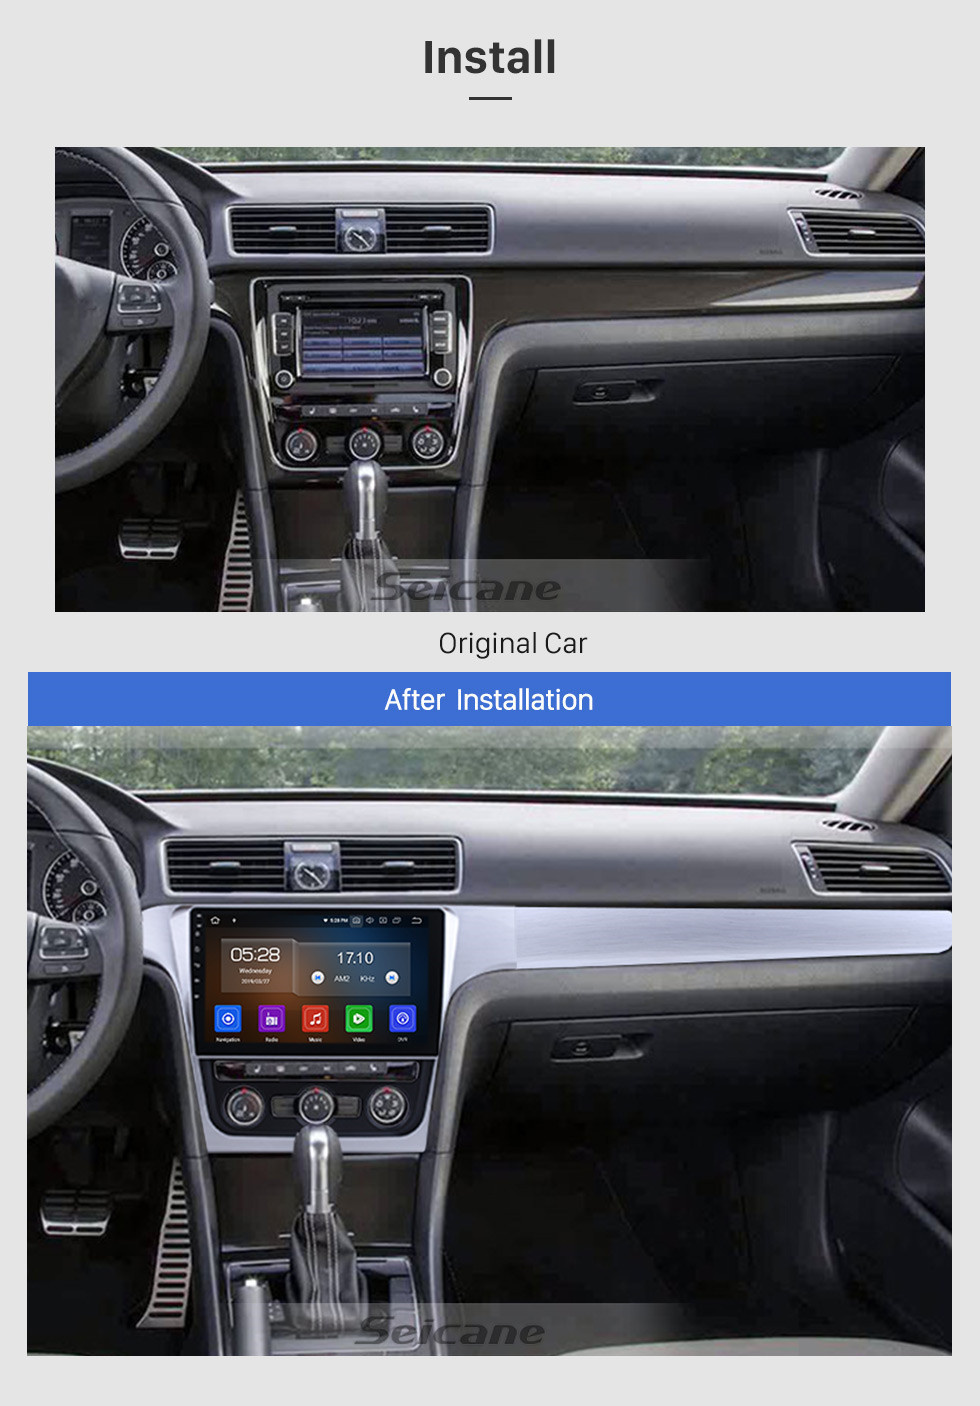 Seicane 2014 2015 VW Volkswagen Passat Android 13.0 Tela de Toque Capacitiva Rádio Sistema de Navegação GPS com Bluetooth TPMS DVR OBD II Câmera Traseira AUX USB SD 3G WiFi Controle de Volante Vídeo